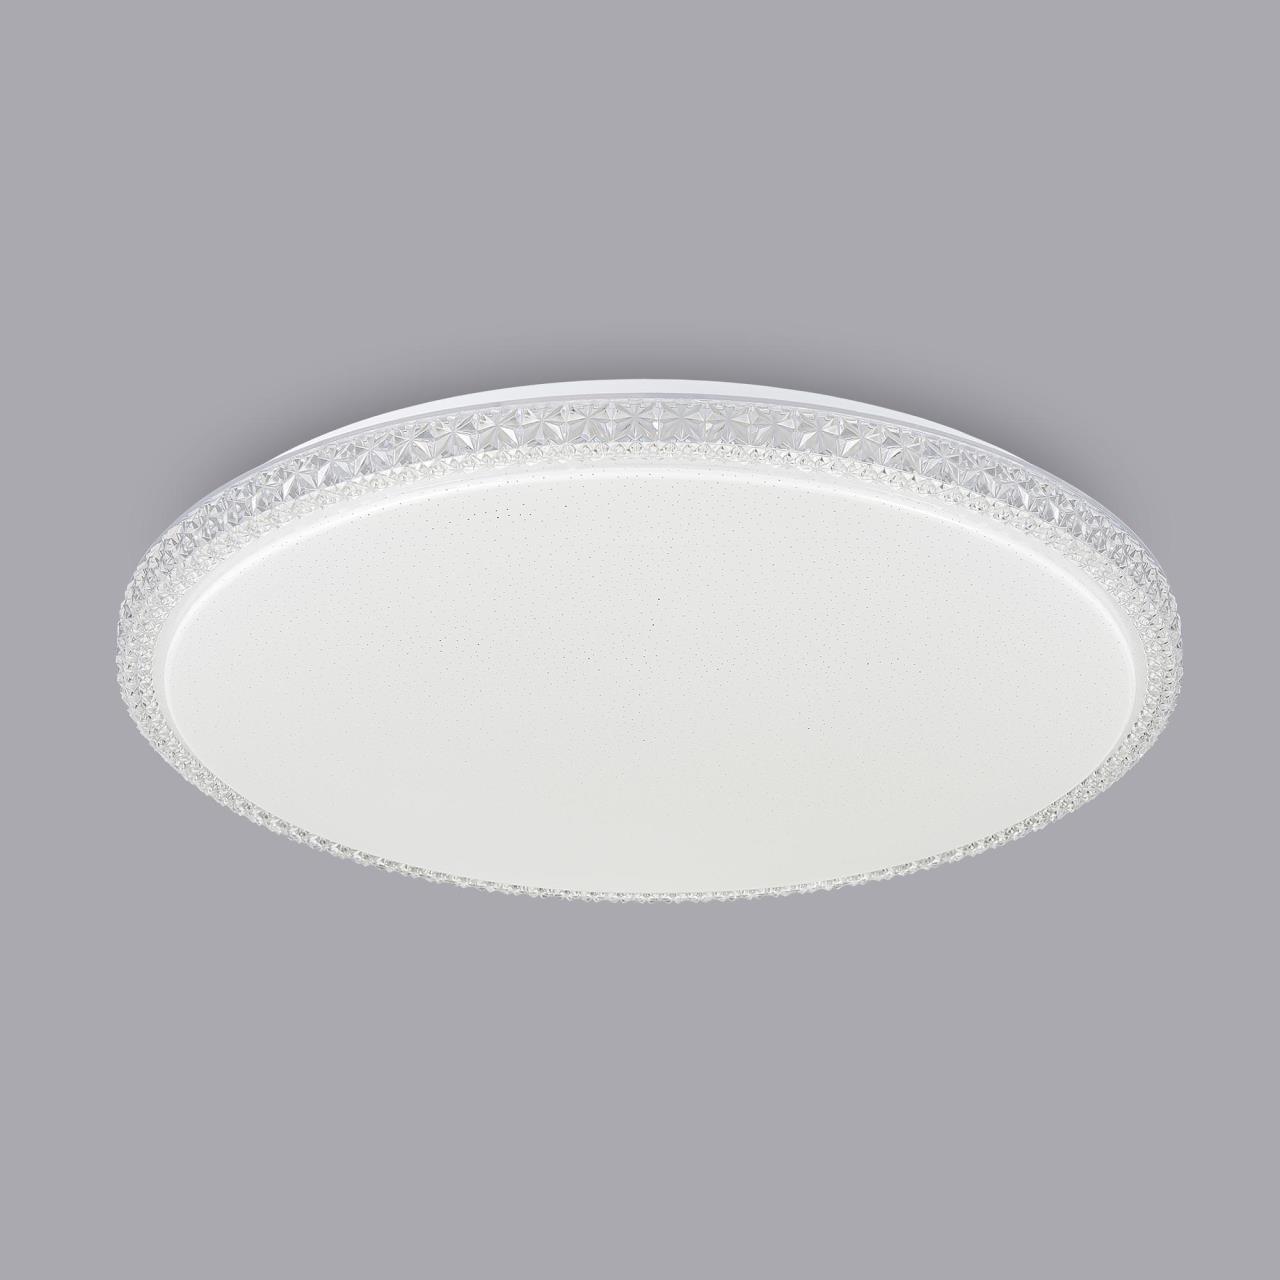 Потолочный светодиодный светильник Citilux Кристалино Слим CL715R720, LED 72W 3000K 5400lm, белый, металл, пластик - фото 4